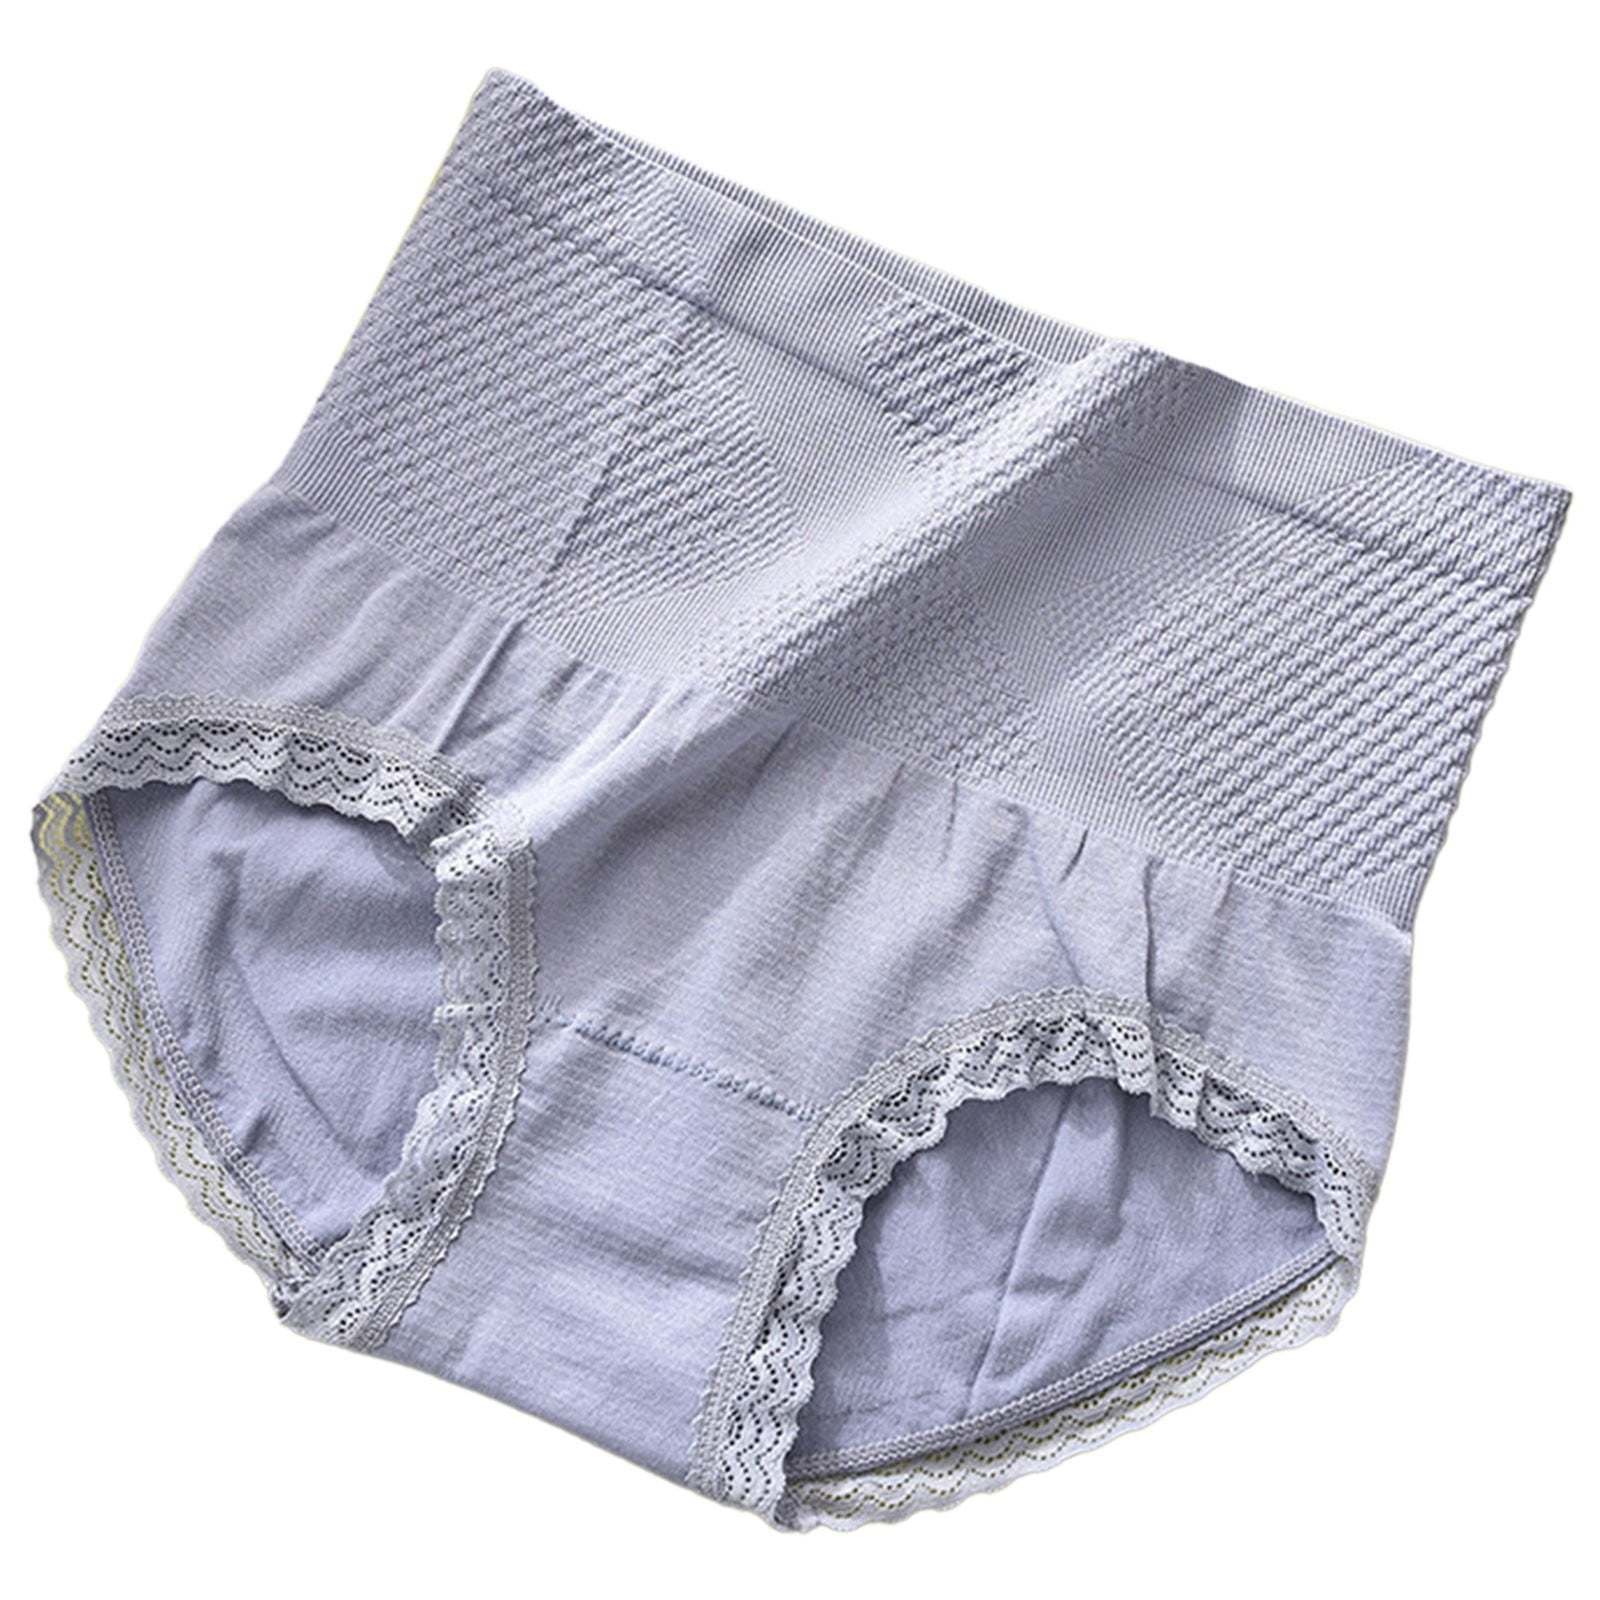 Plus Size Weight 80KG Women's Cotton Panties High Waist Seamless